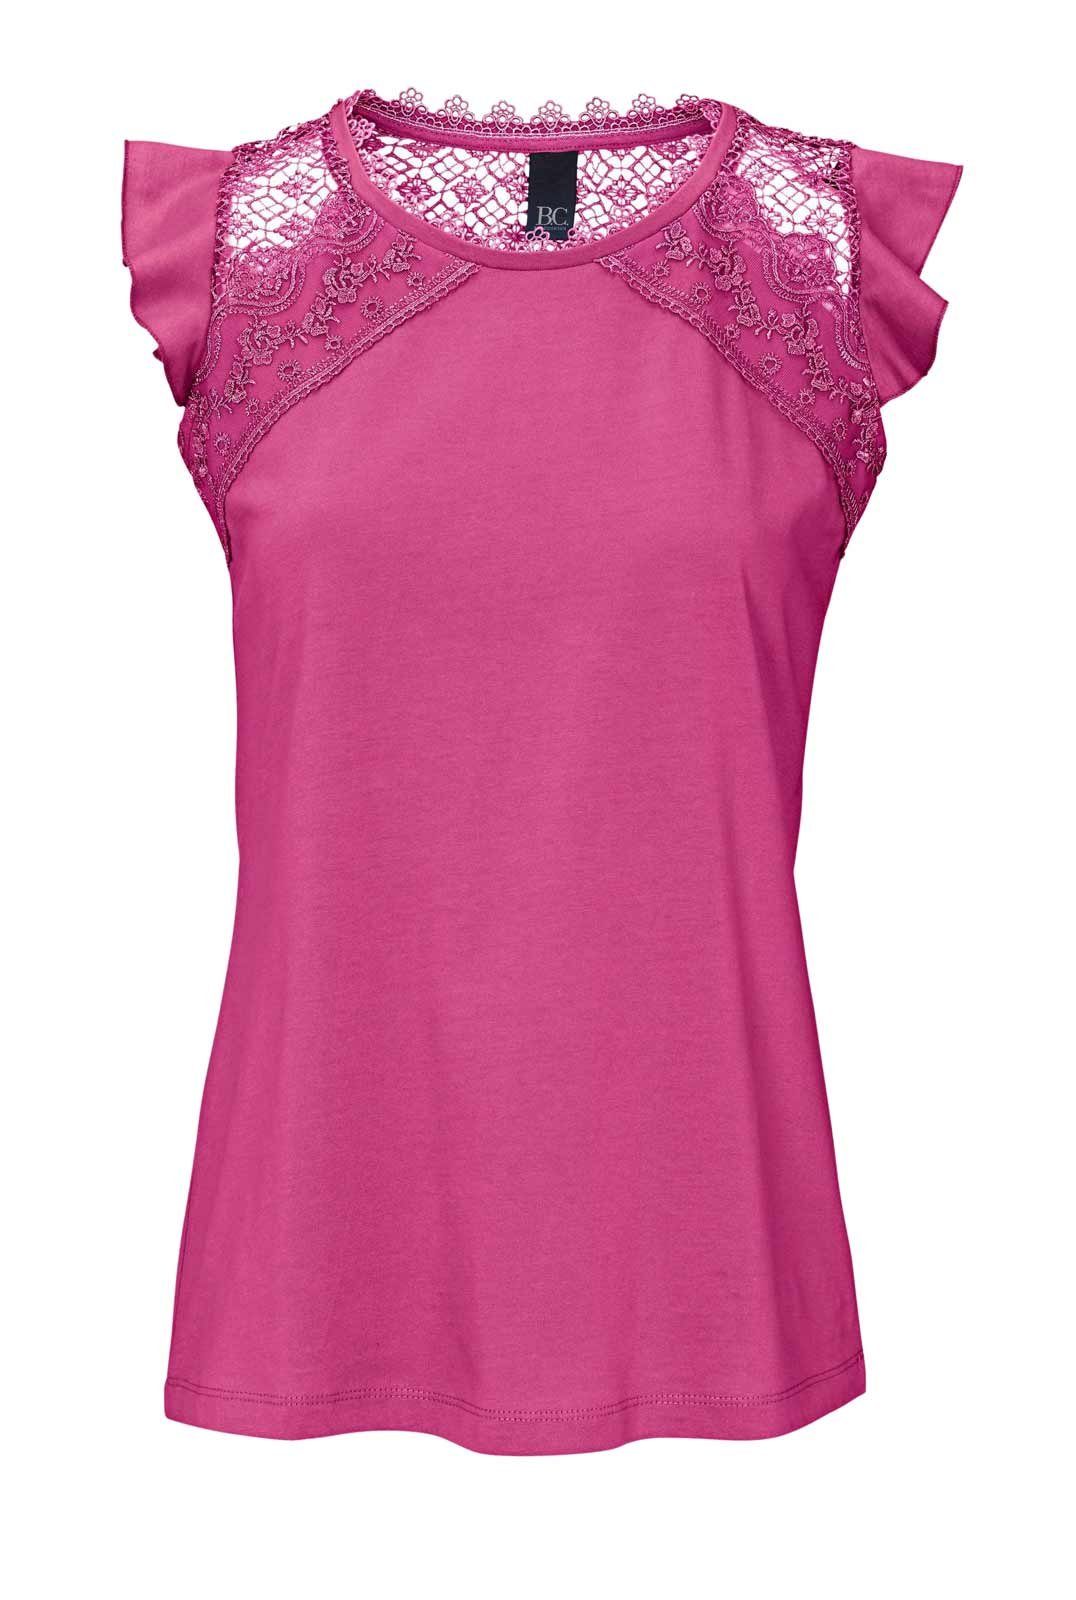 by Connections - heine Jerseyshirt B.C. Heine Connection pink T-Shirt Damen Best Best mit Häkelspitze,